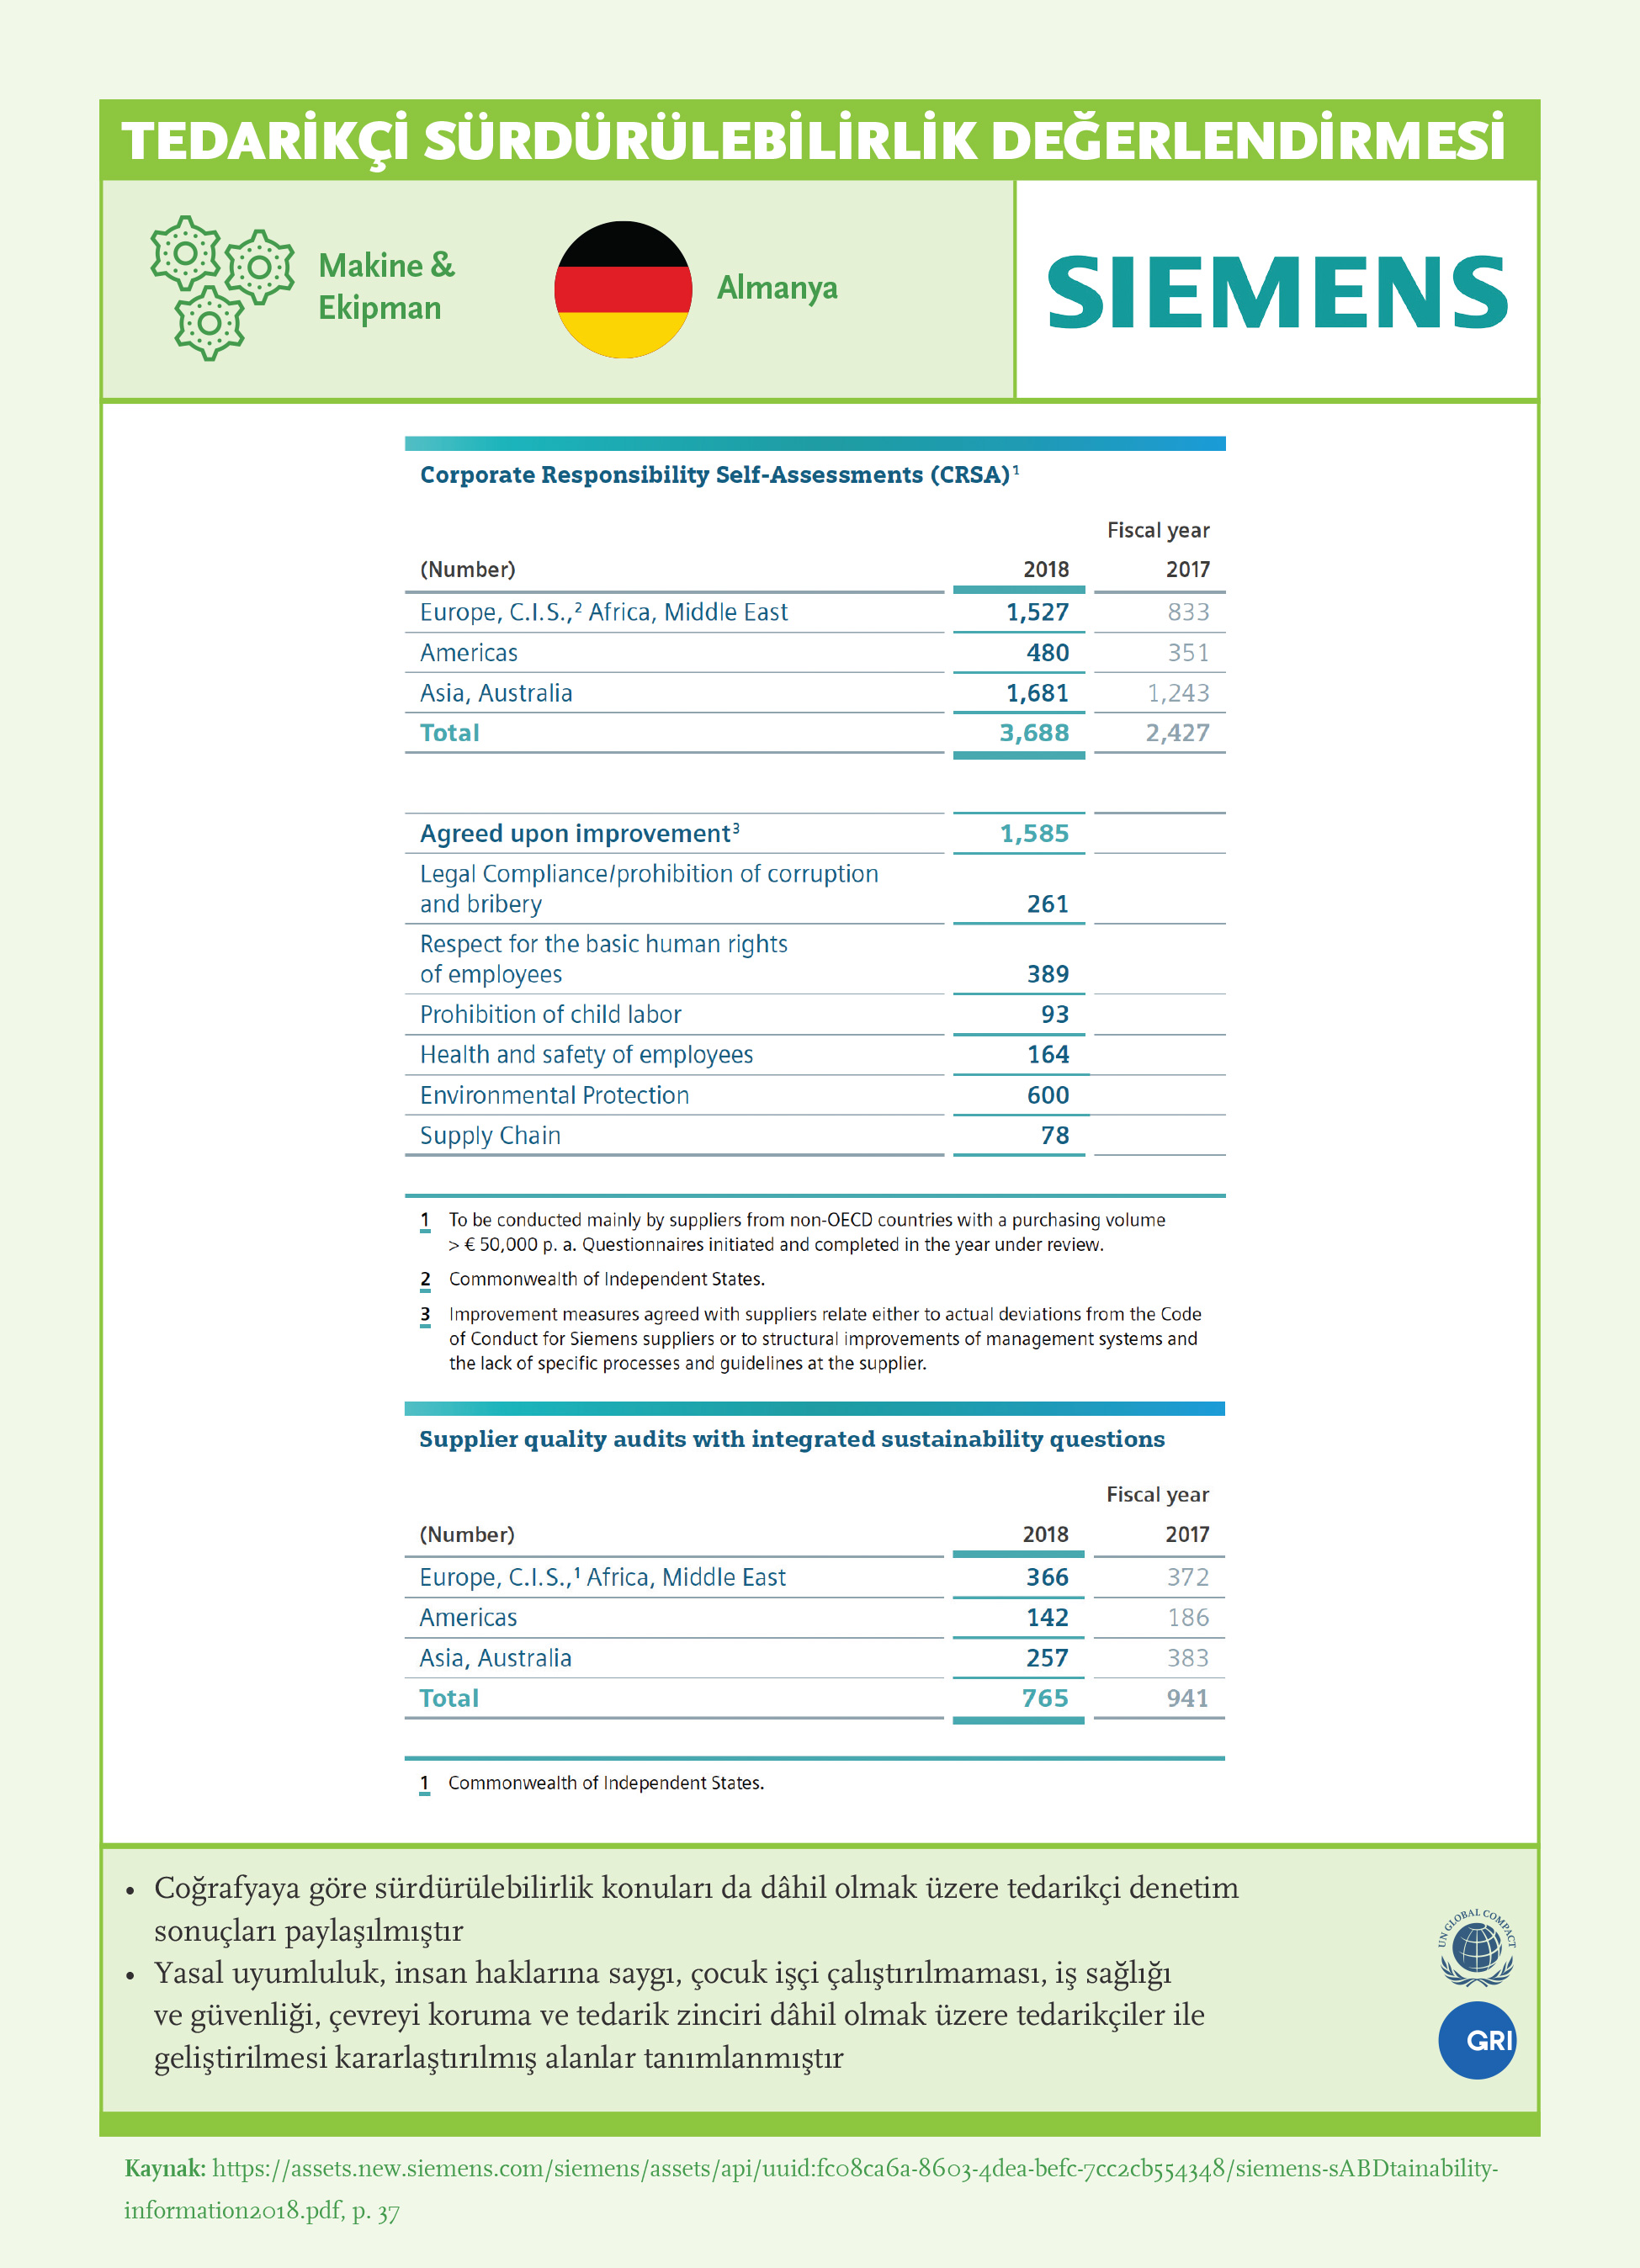 Tedarikçi Sürdürülebilirlik Değerlendirmesi: Siemens